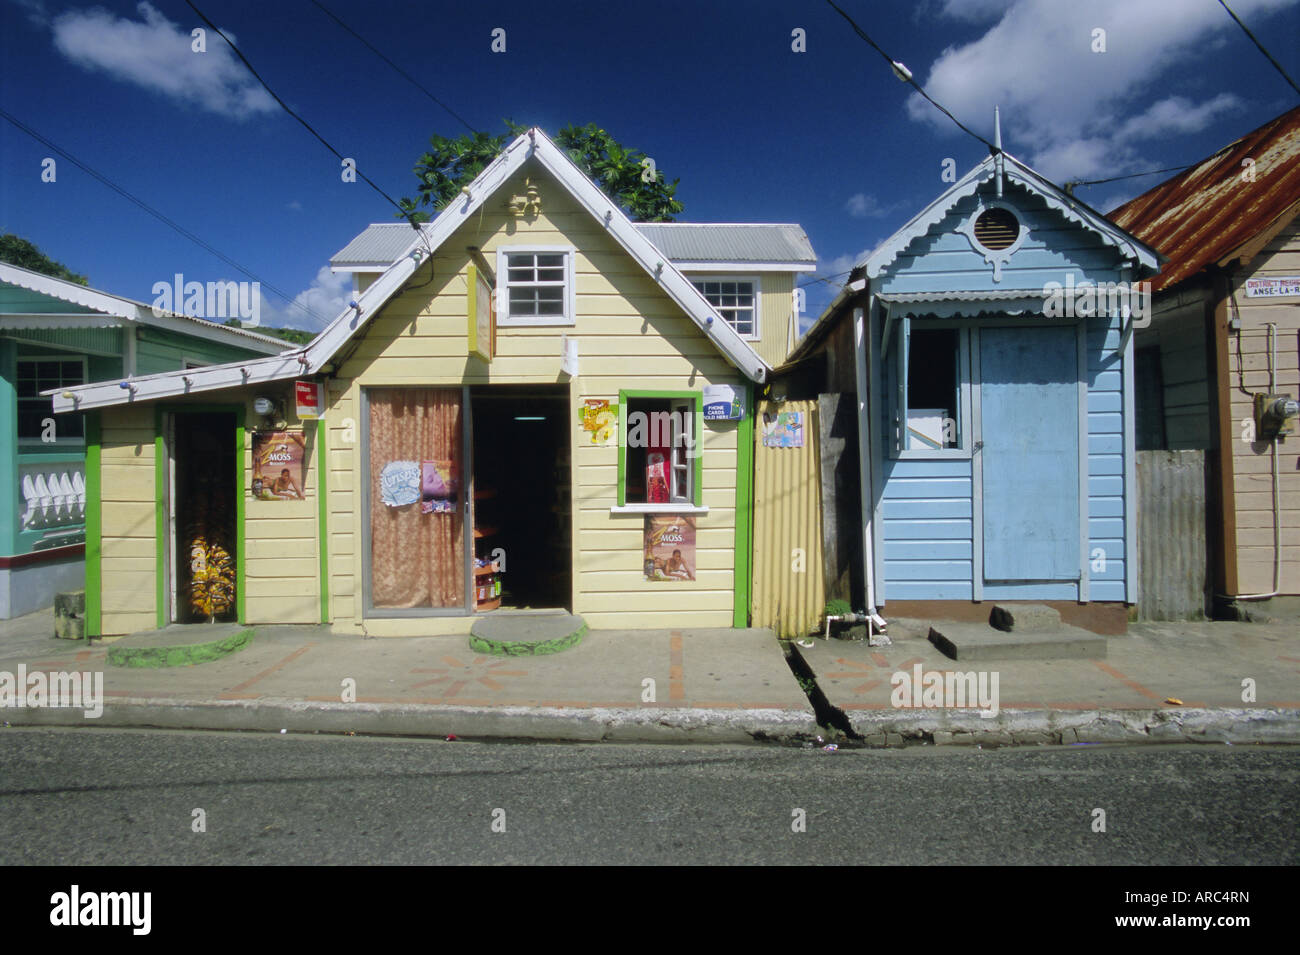 Maisons typiquement caribéen, Sainte-Lucie, îles du Vent, Antilles, Caraïbes, Amérique Centrale Banque D'Images